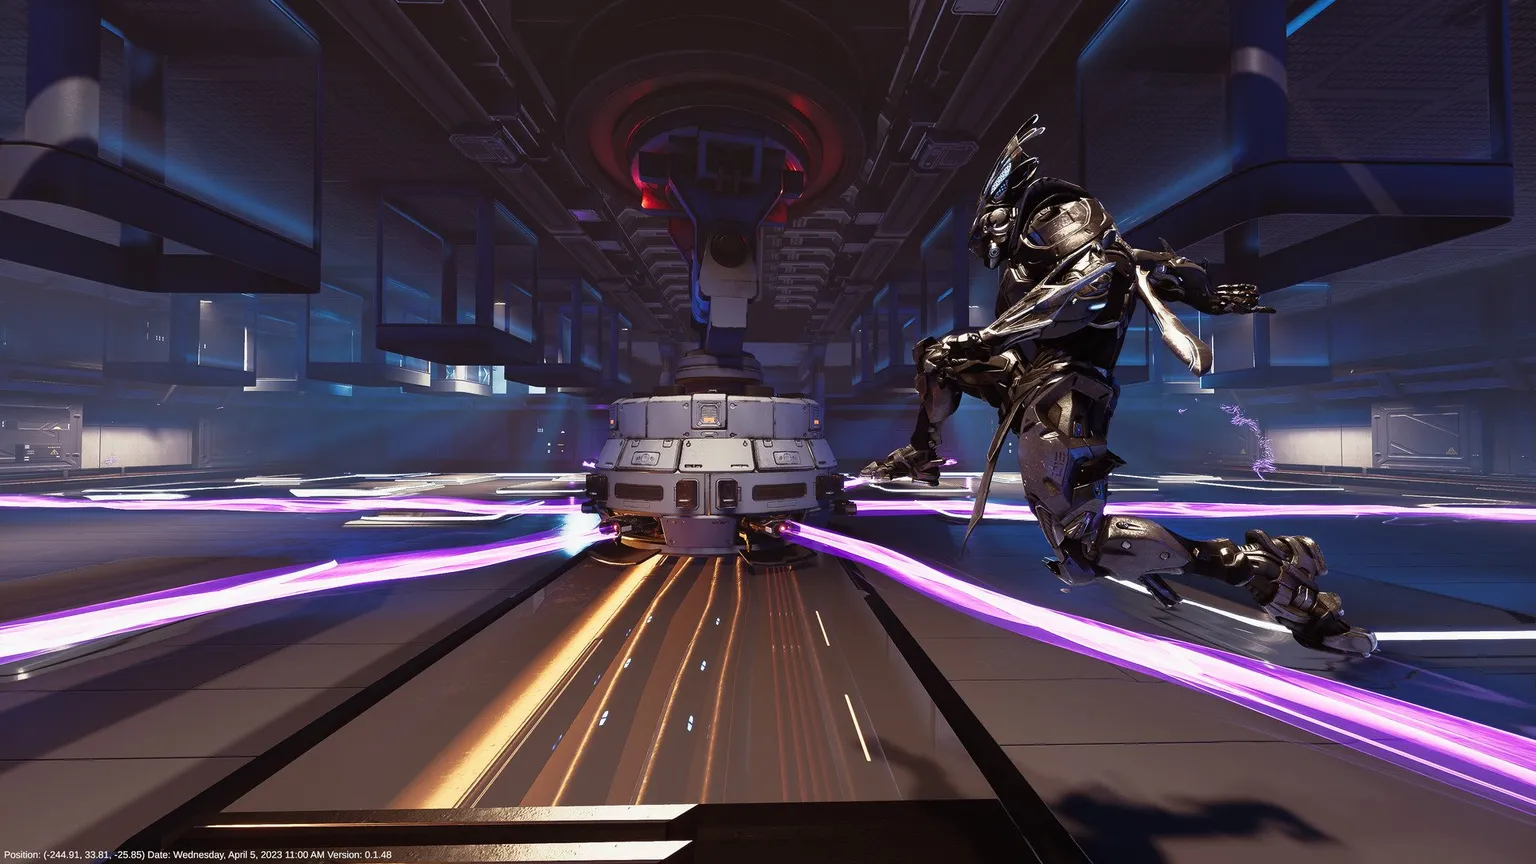 Captură de ecran de la Proving Grounds, care îl arată pe Reyu sărind peste lasere violete într-un mediu de depozit distopic scifi.